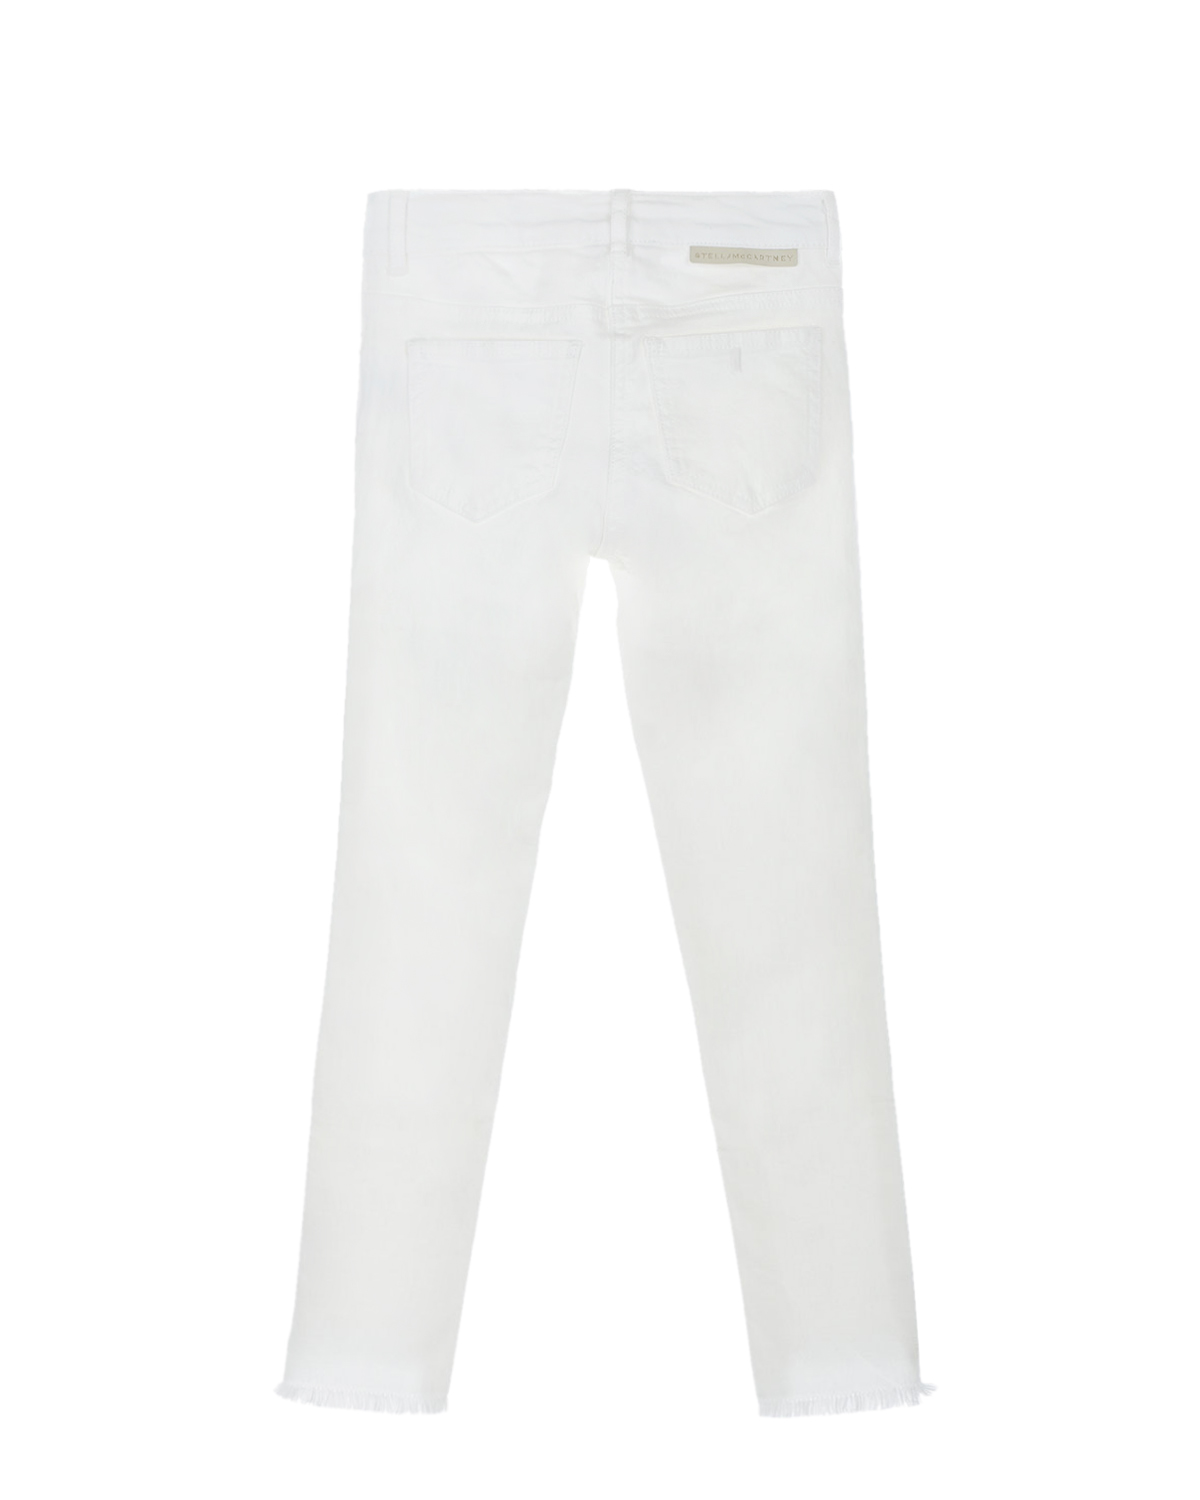 Белые джинсы с отделкой бахромой по краю Stella McCartney детские, размер 128, цвет белый - фото 2